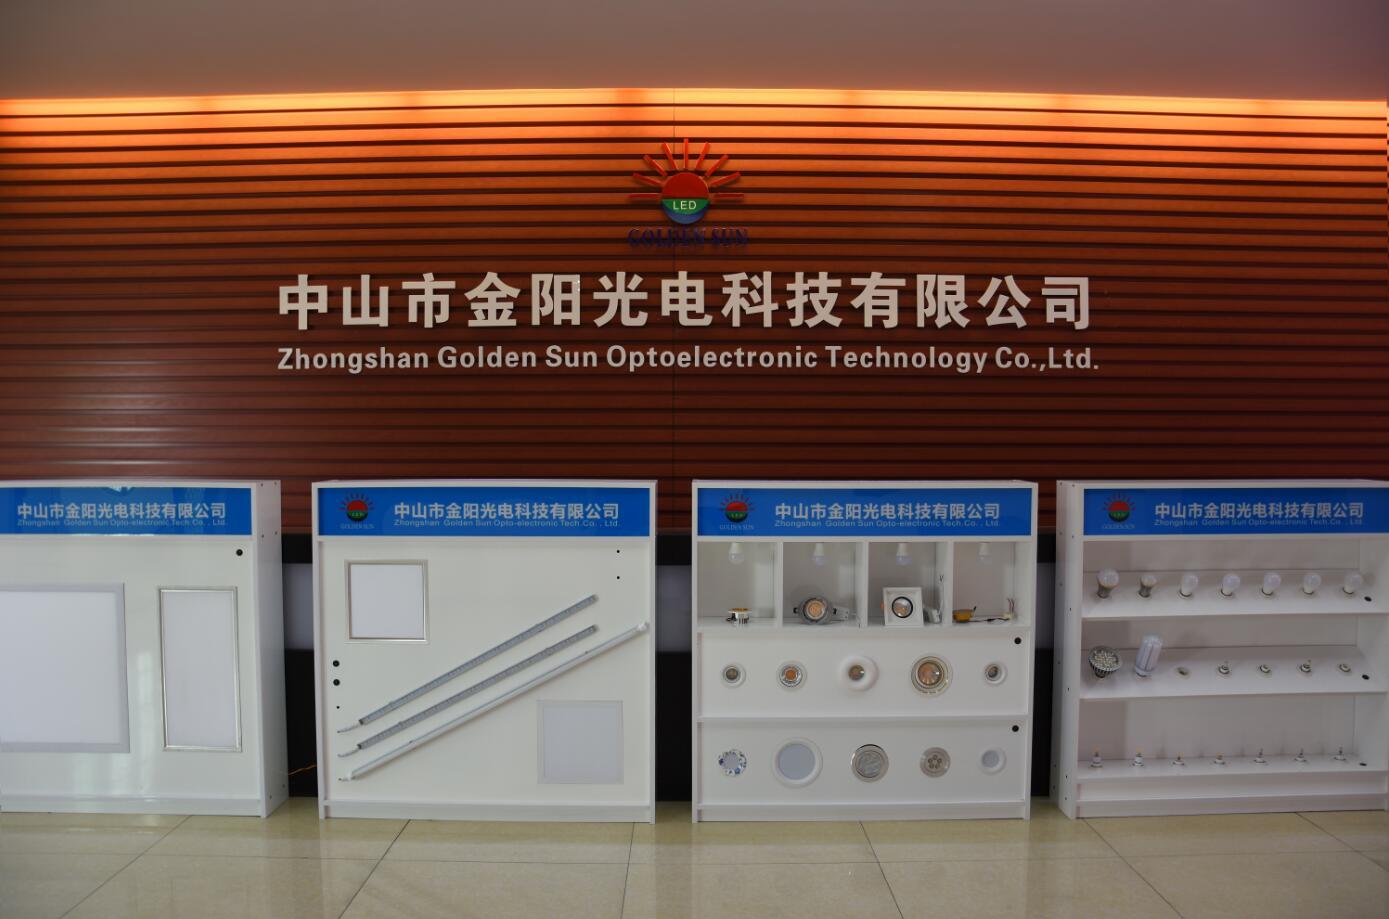 Zhongshan Golden Sun Optoelectronic Technology Co.,Ltd